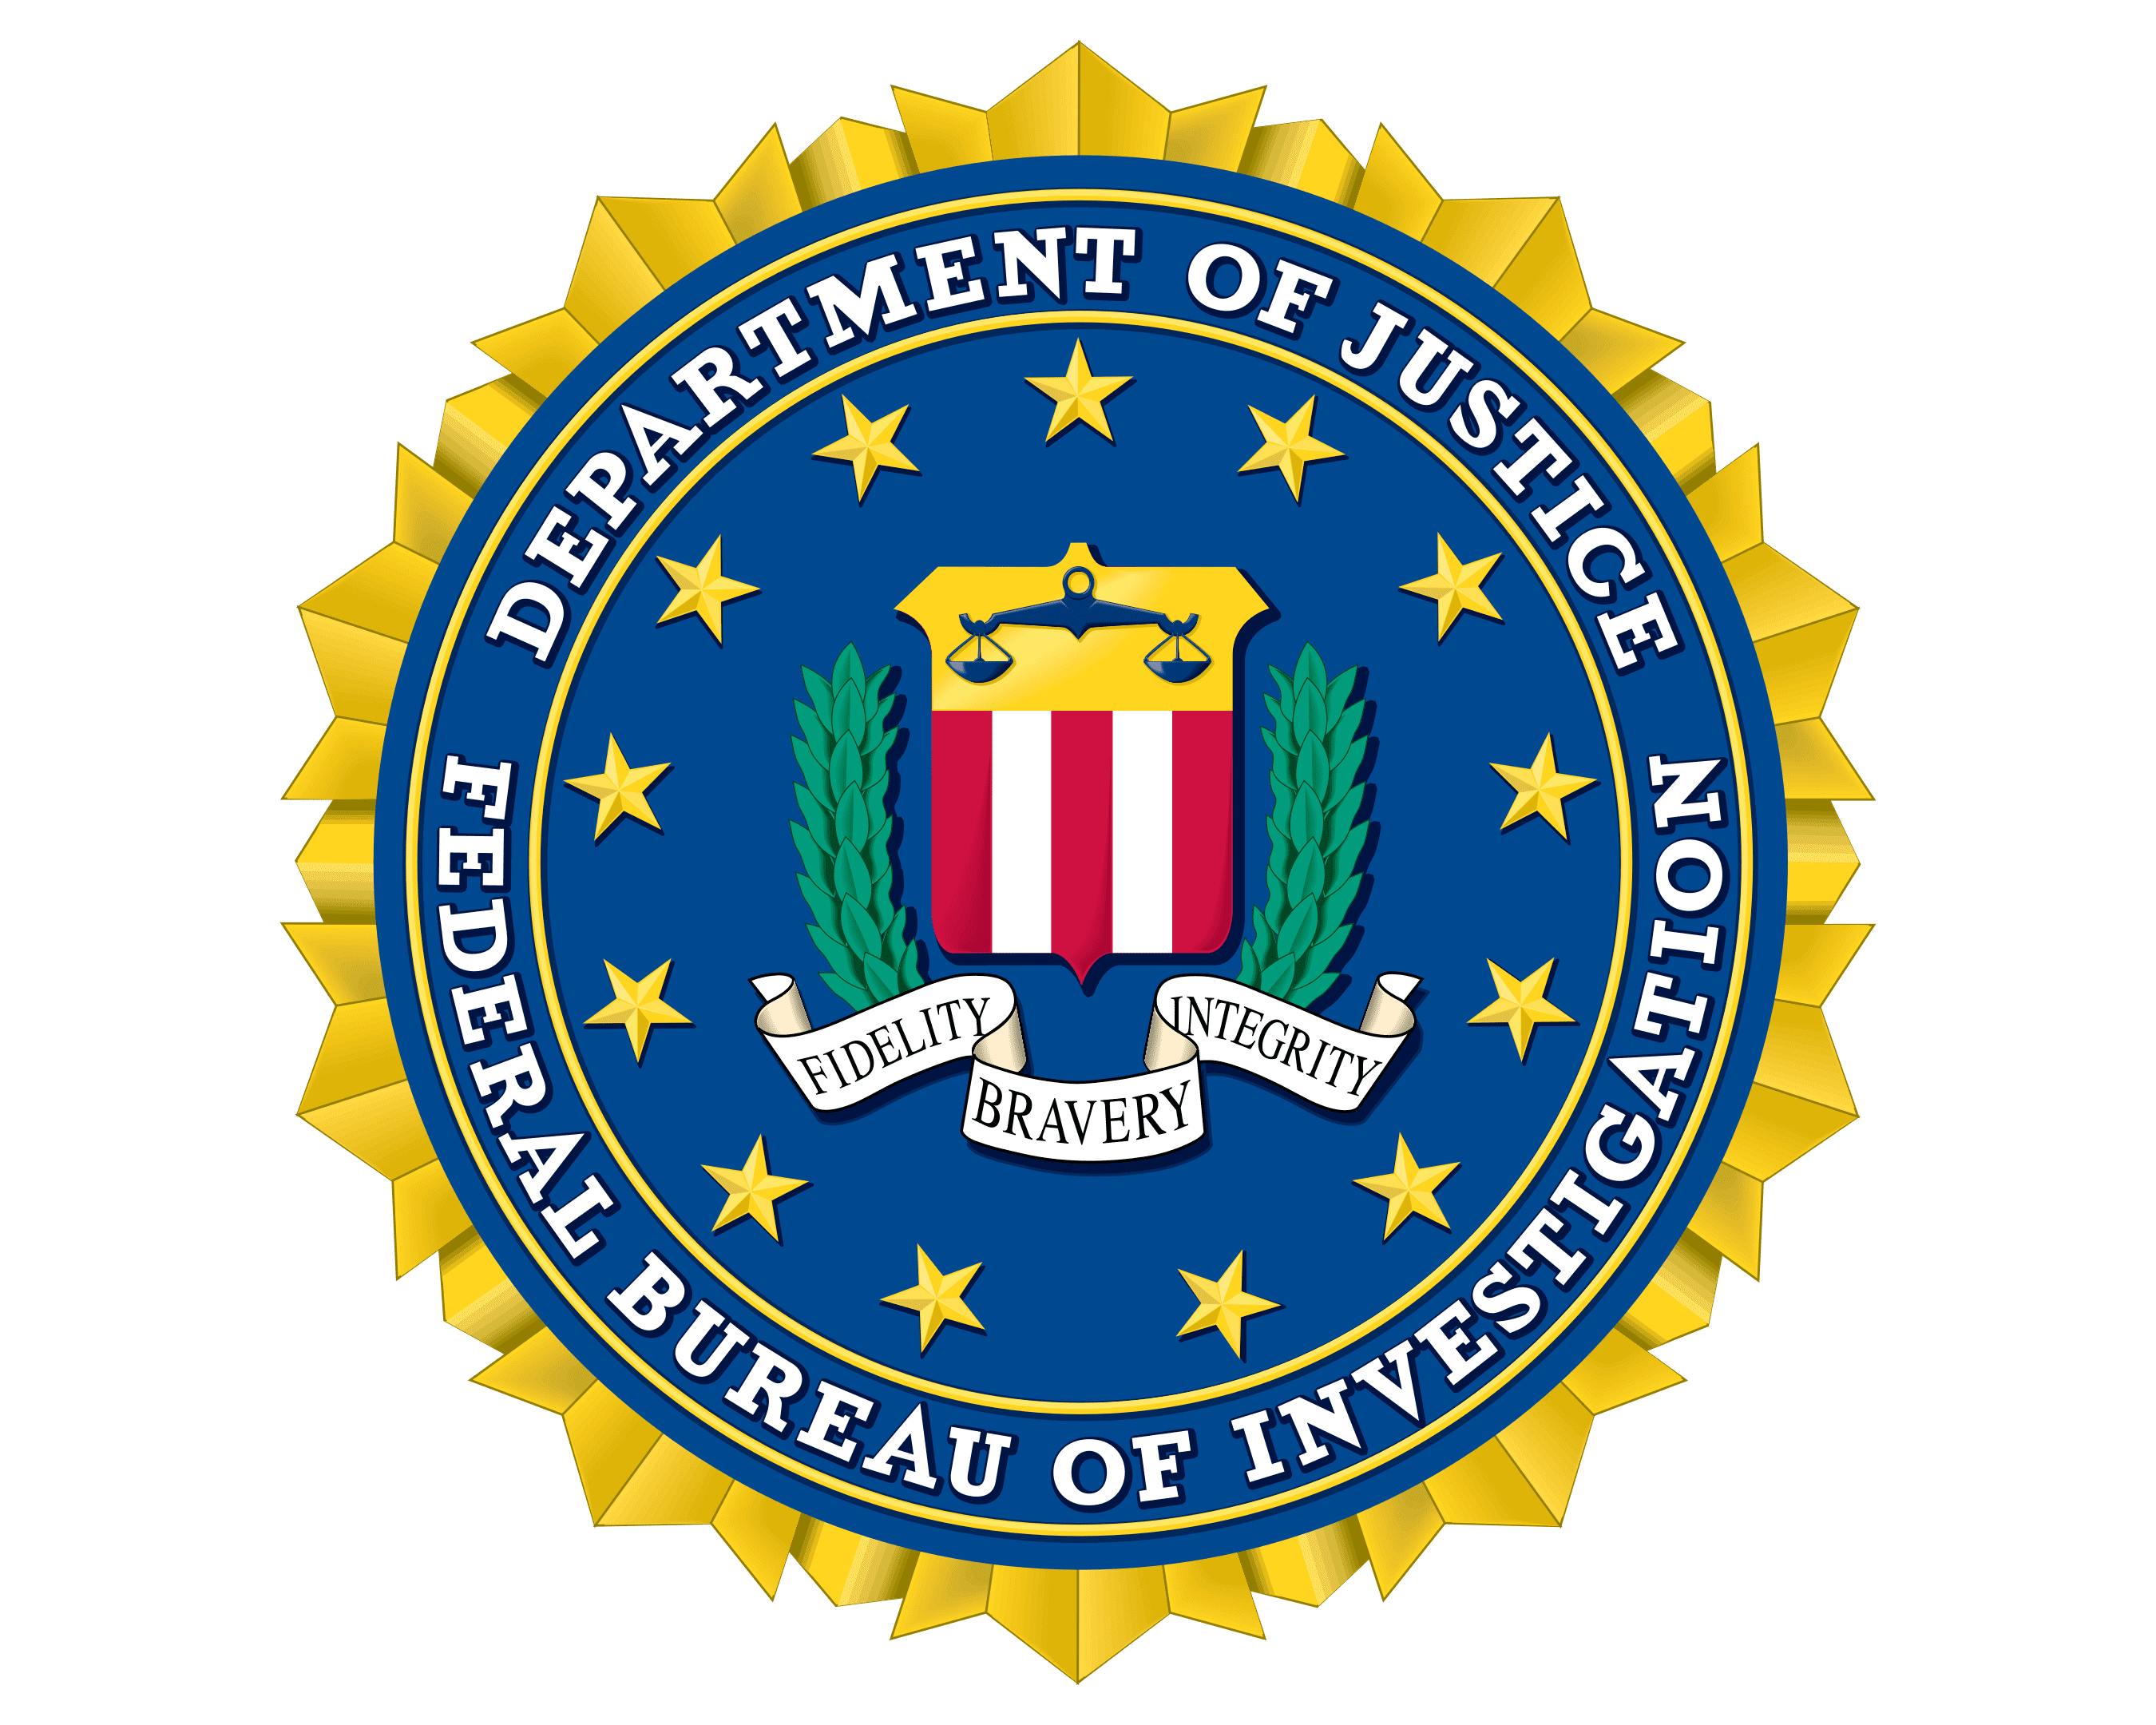 FBI Logo PNG Image HD